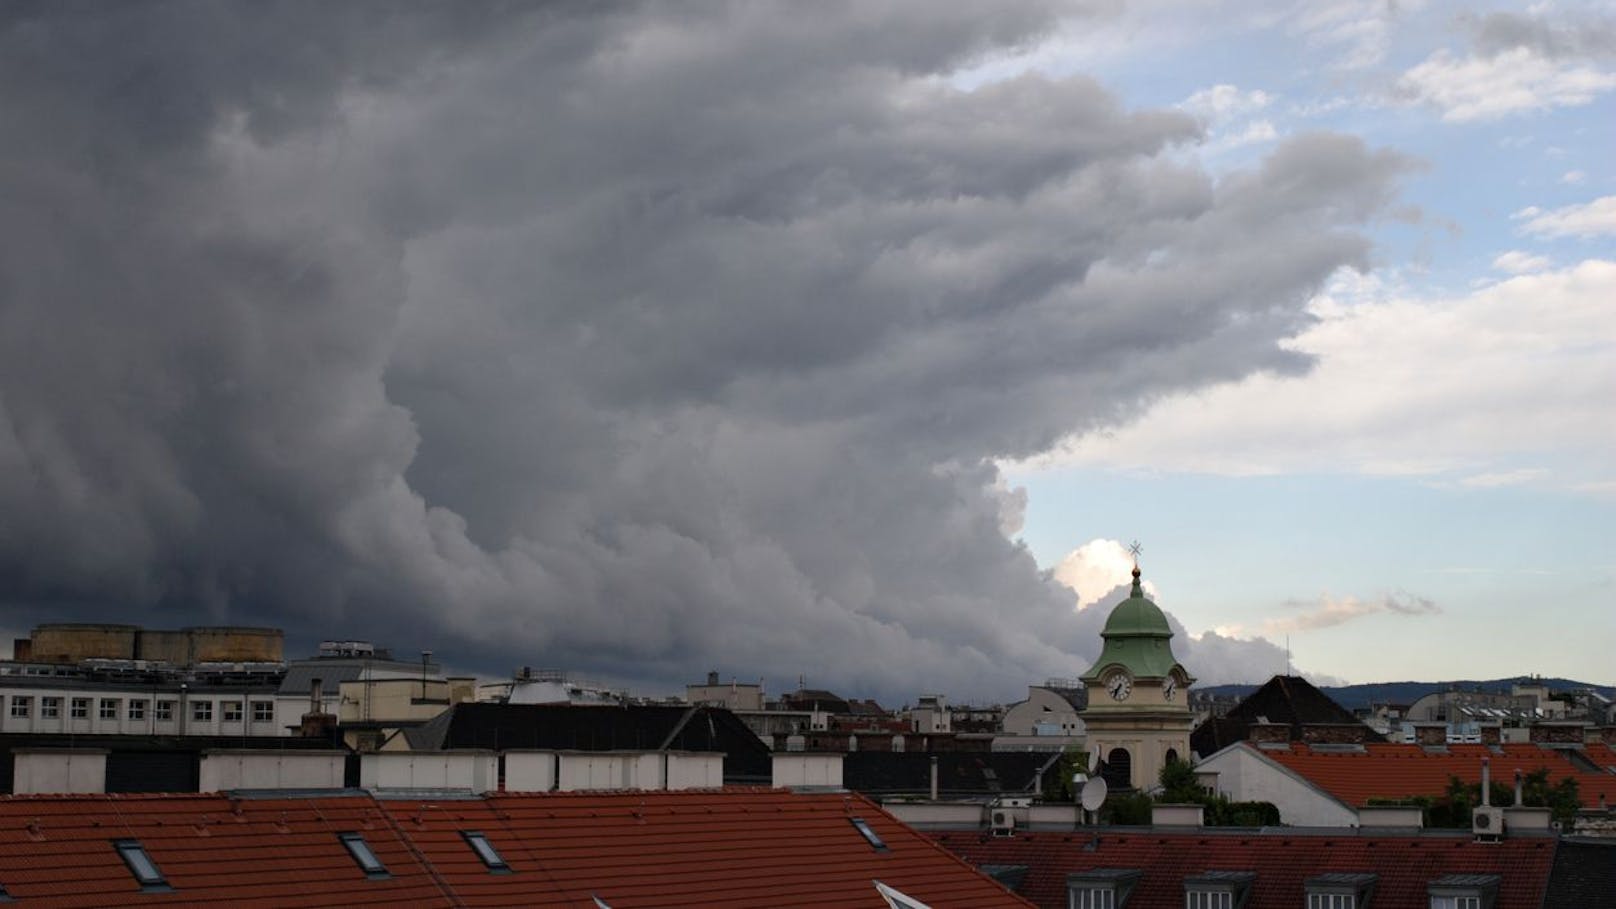 Am Gründonnerstag wird es im Norden Österreichs ungemütlich. Die Zeichen stehen auf Sturm!